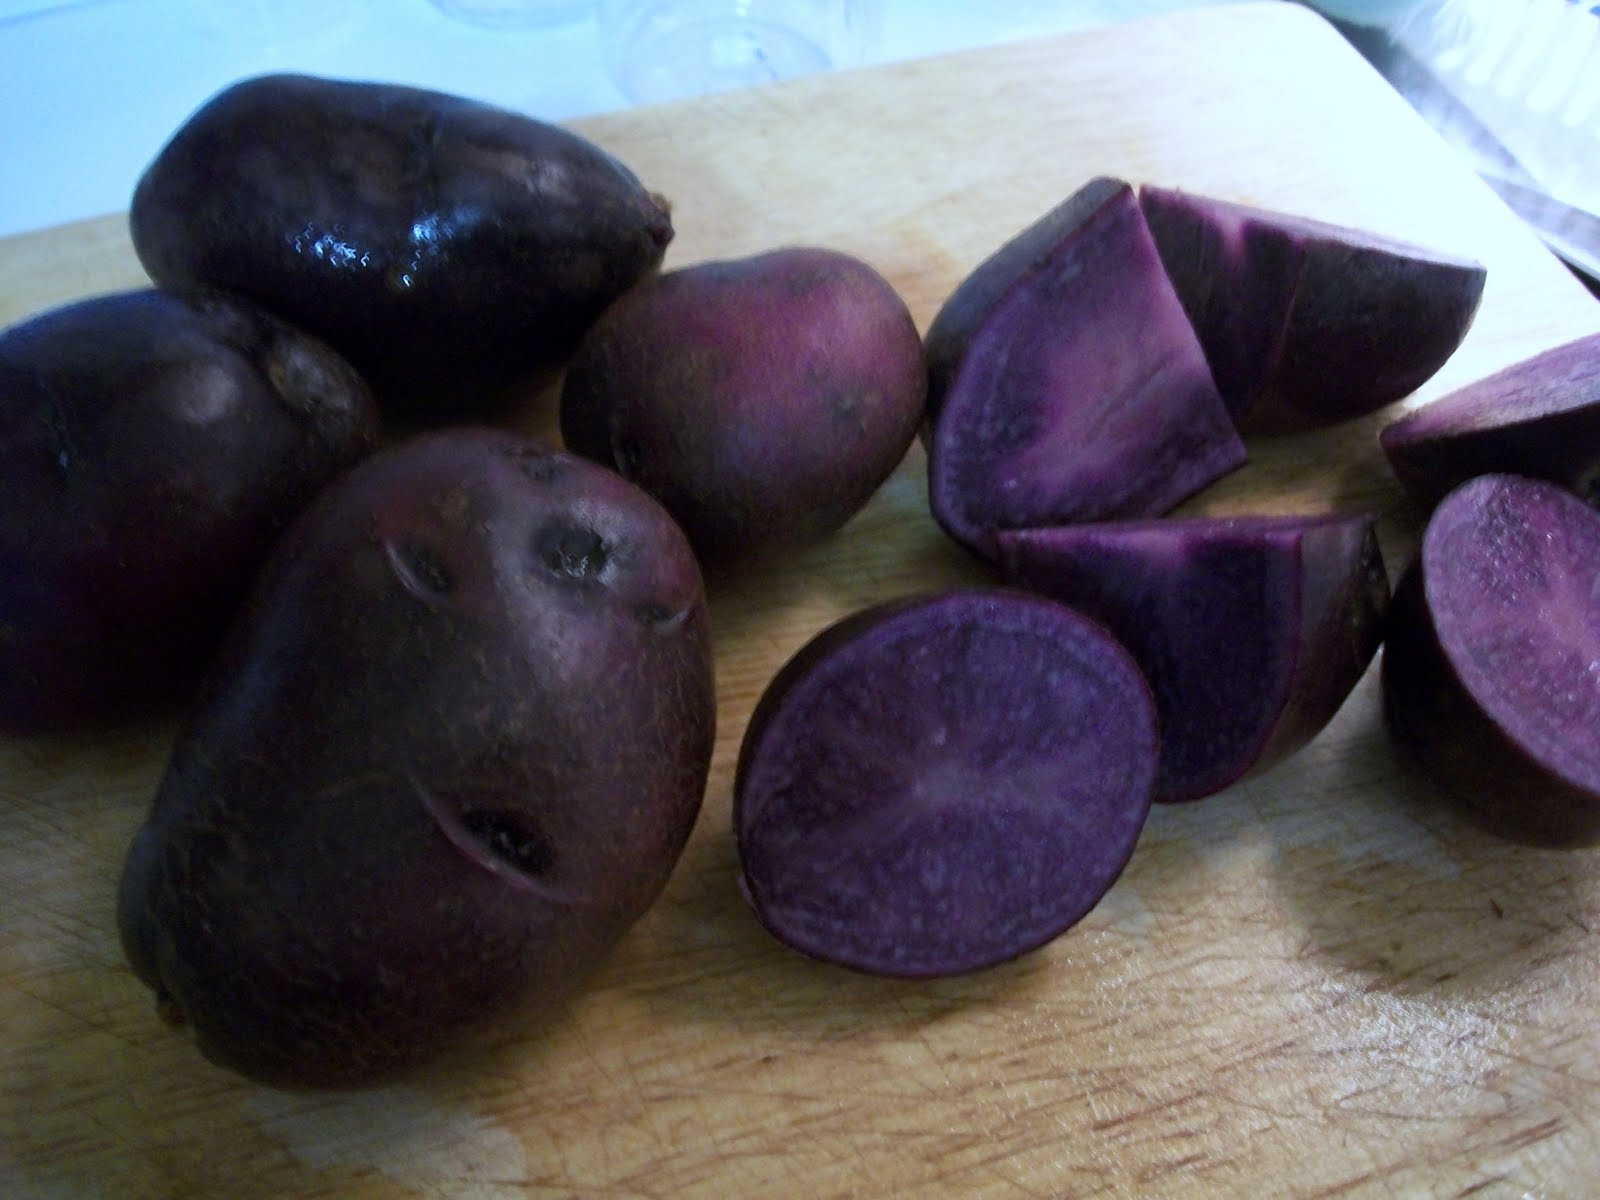 Adirondack Blue Potatoes